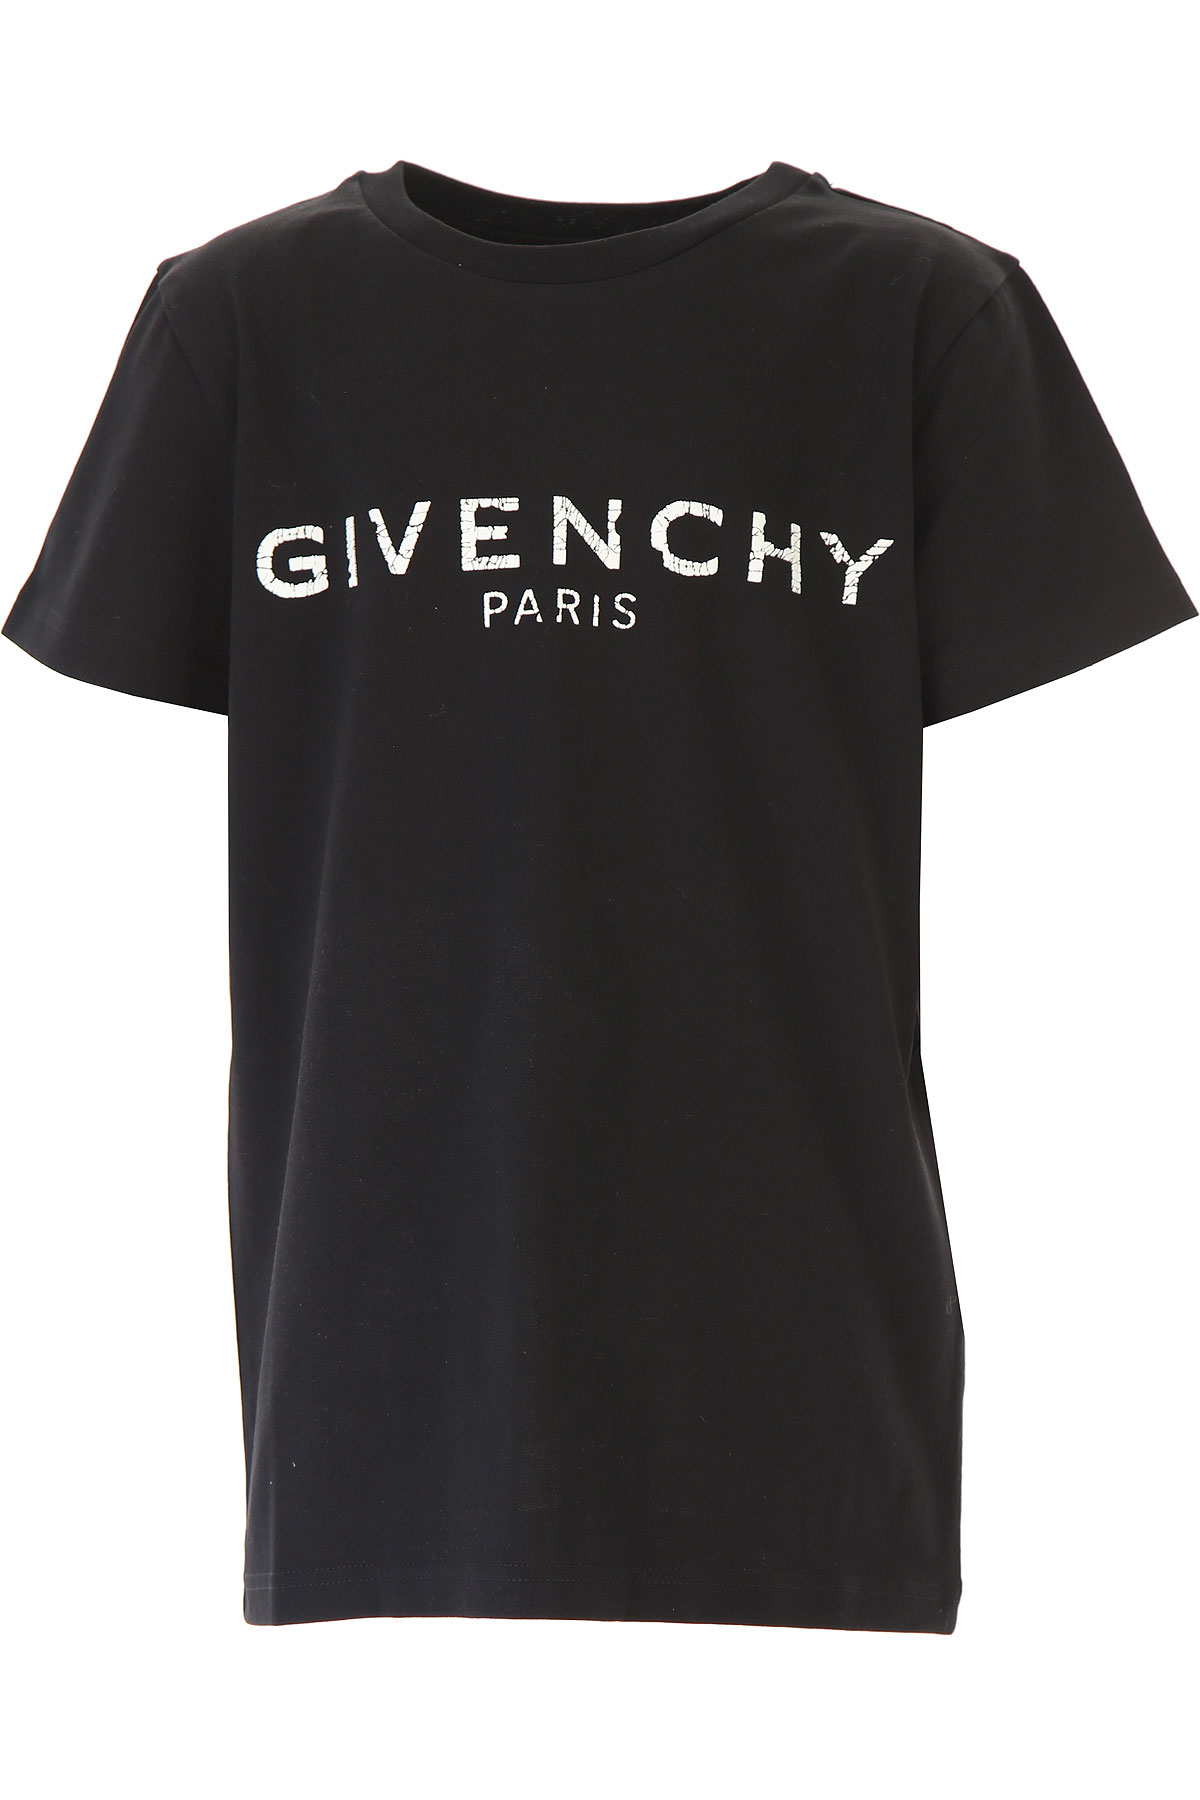 Givenchy Kinder T-Shirt für Jungen Günstig im Sale, Schwarz, Baumwolle, 2017, 4Y 6Y 8Y